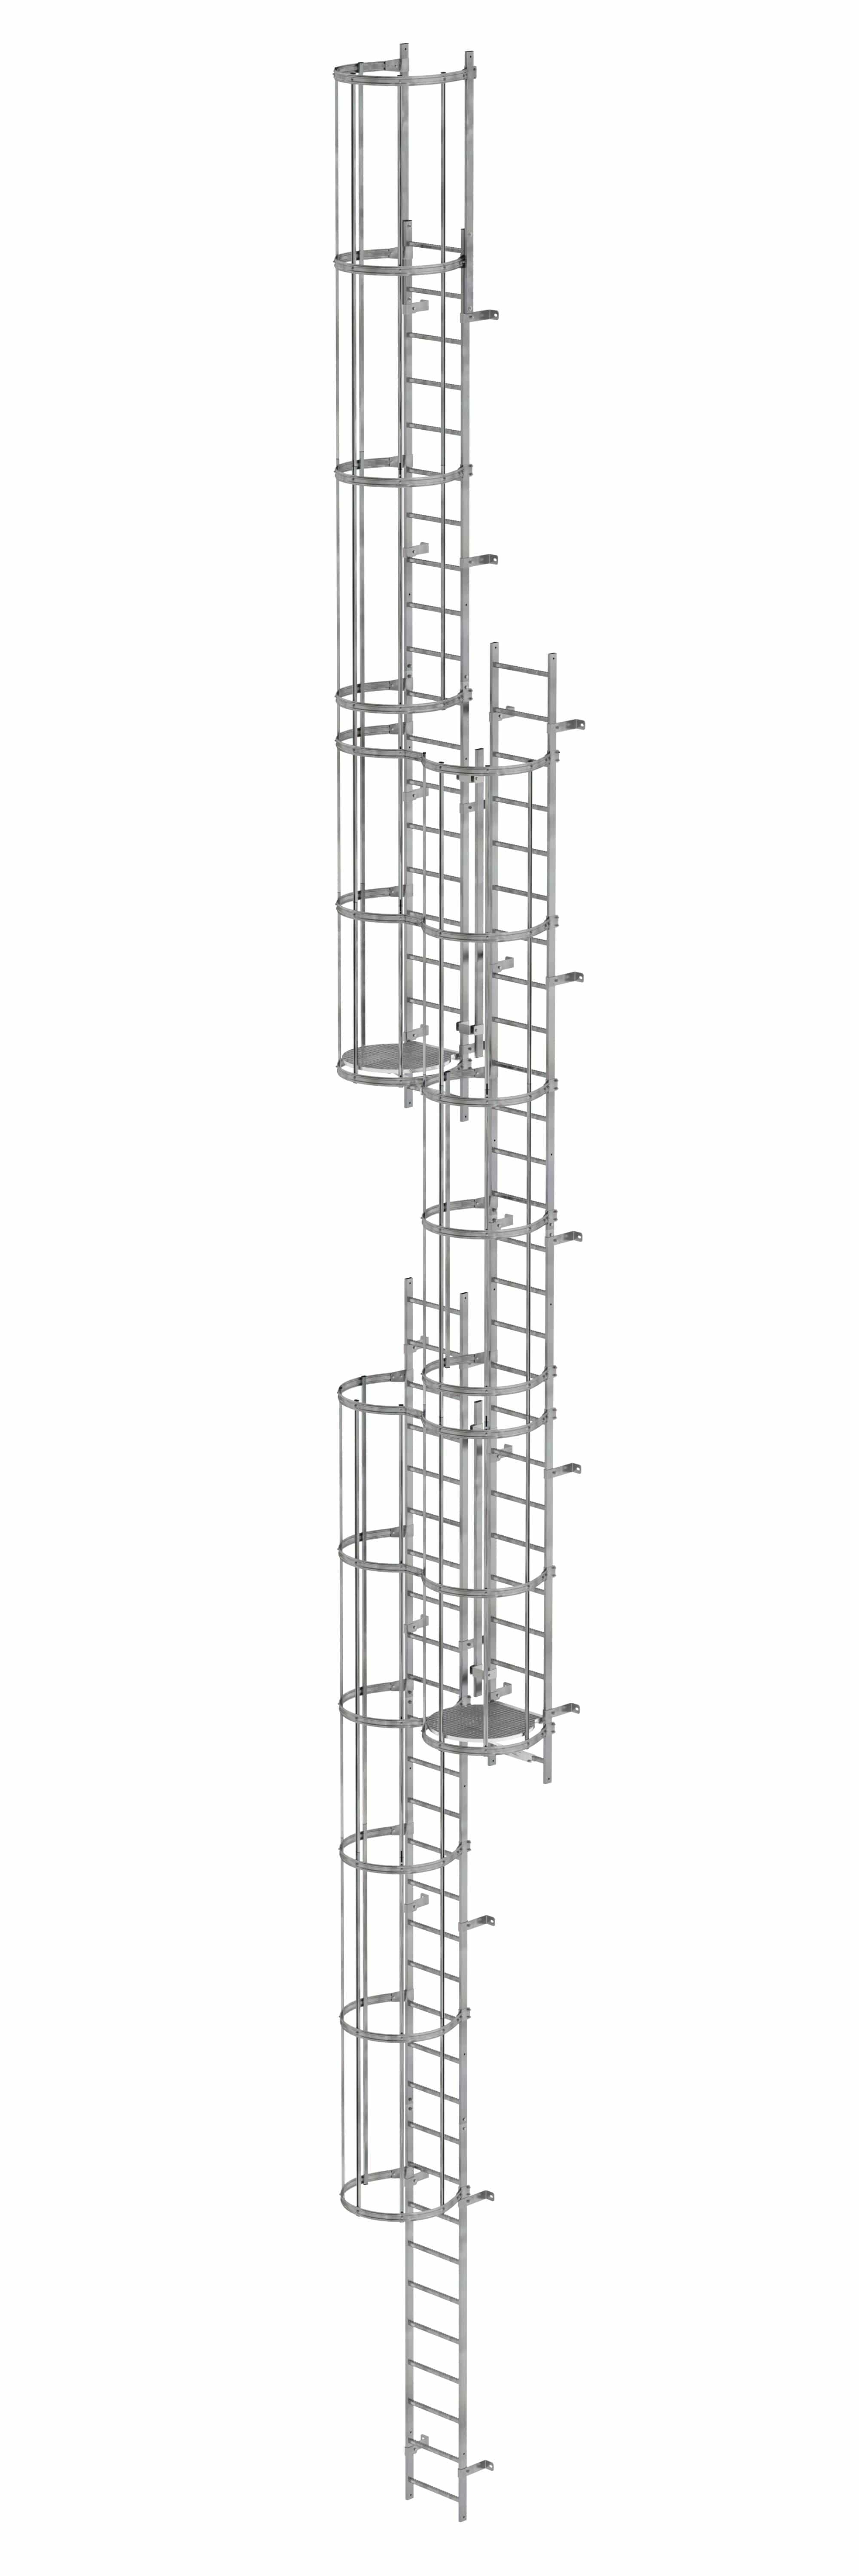 Munk Mehrzügige Steigleiter mit Rückenschutz (Maschinen) Stahl verzinkt 16,32m